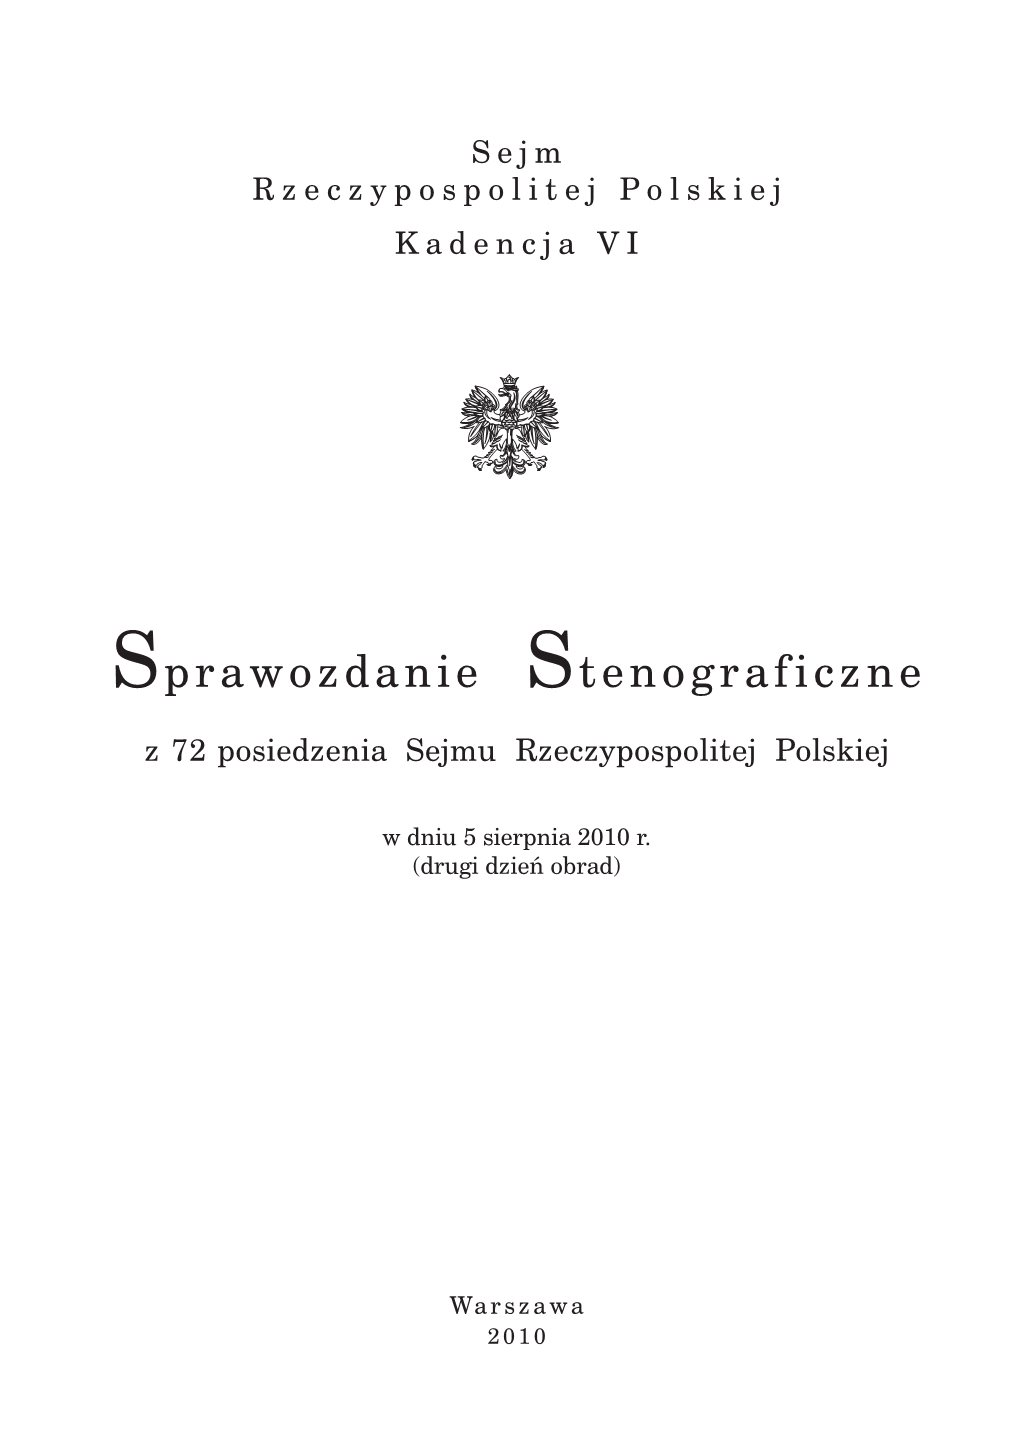 Sprawozdanie Stenograficzne Z 72 Posiedzenia Sejmu Rzeczypospolitej Polskiej